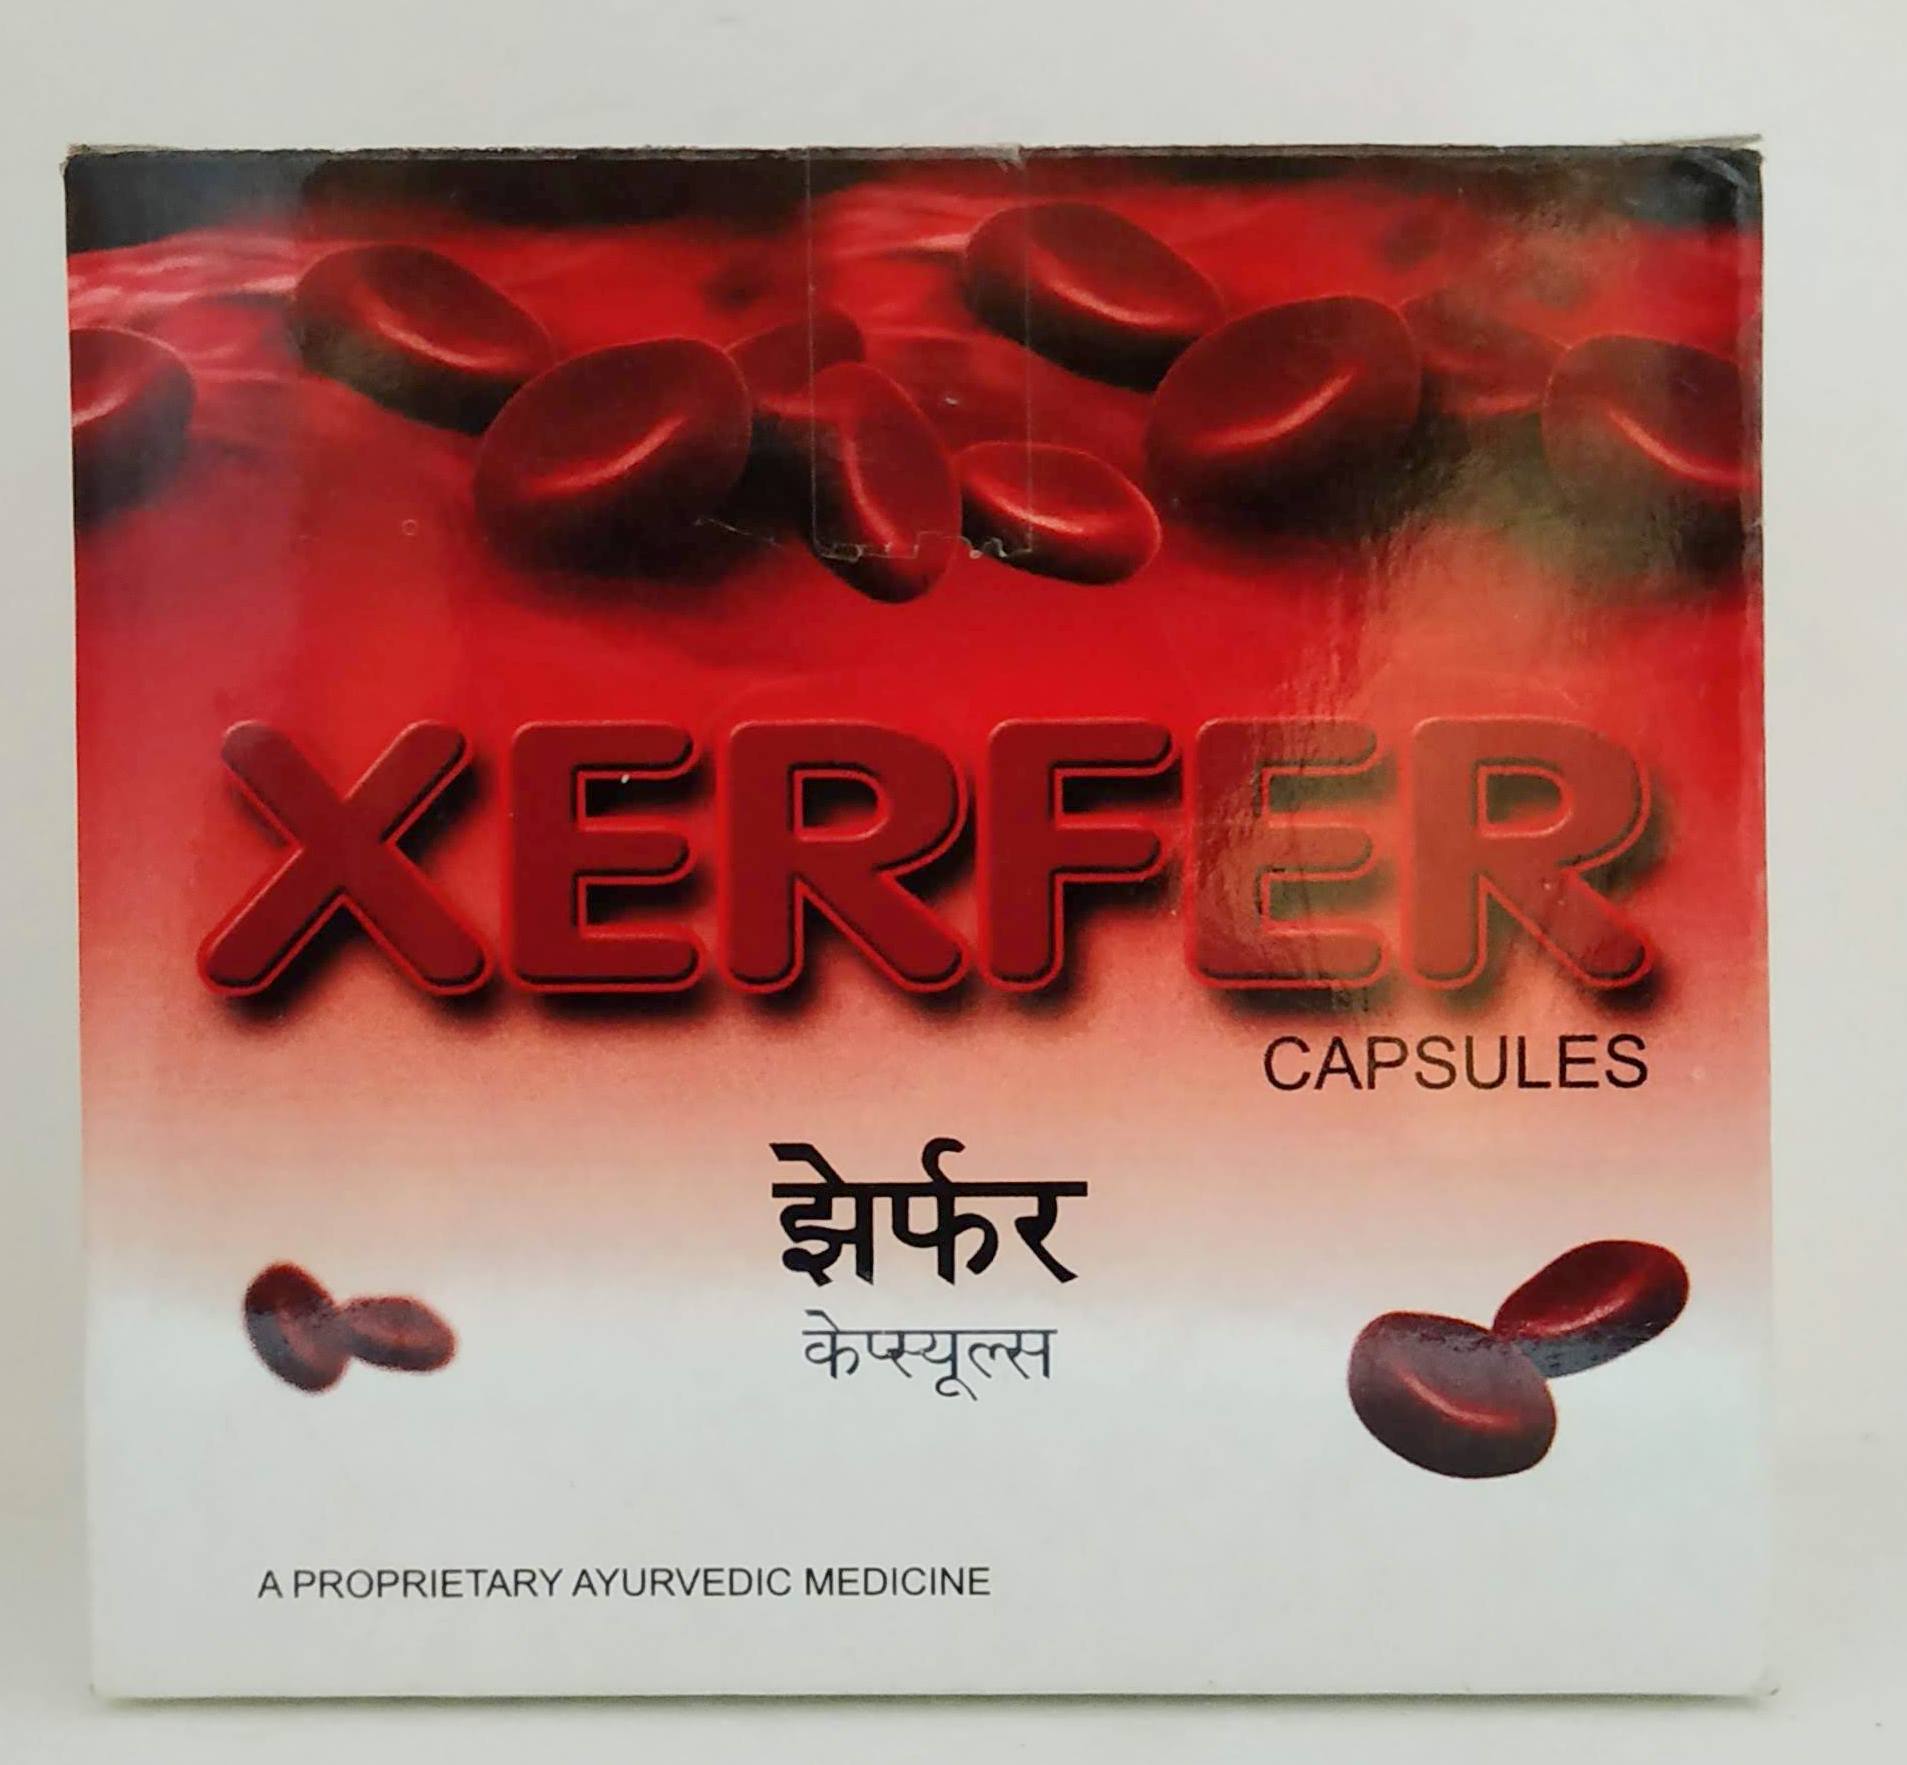 Xerfer Capsules - 10Capsules